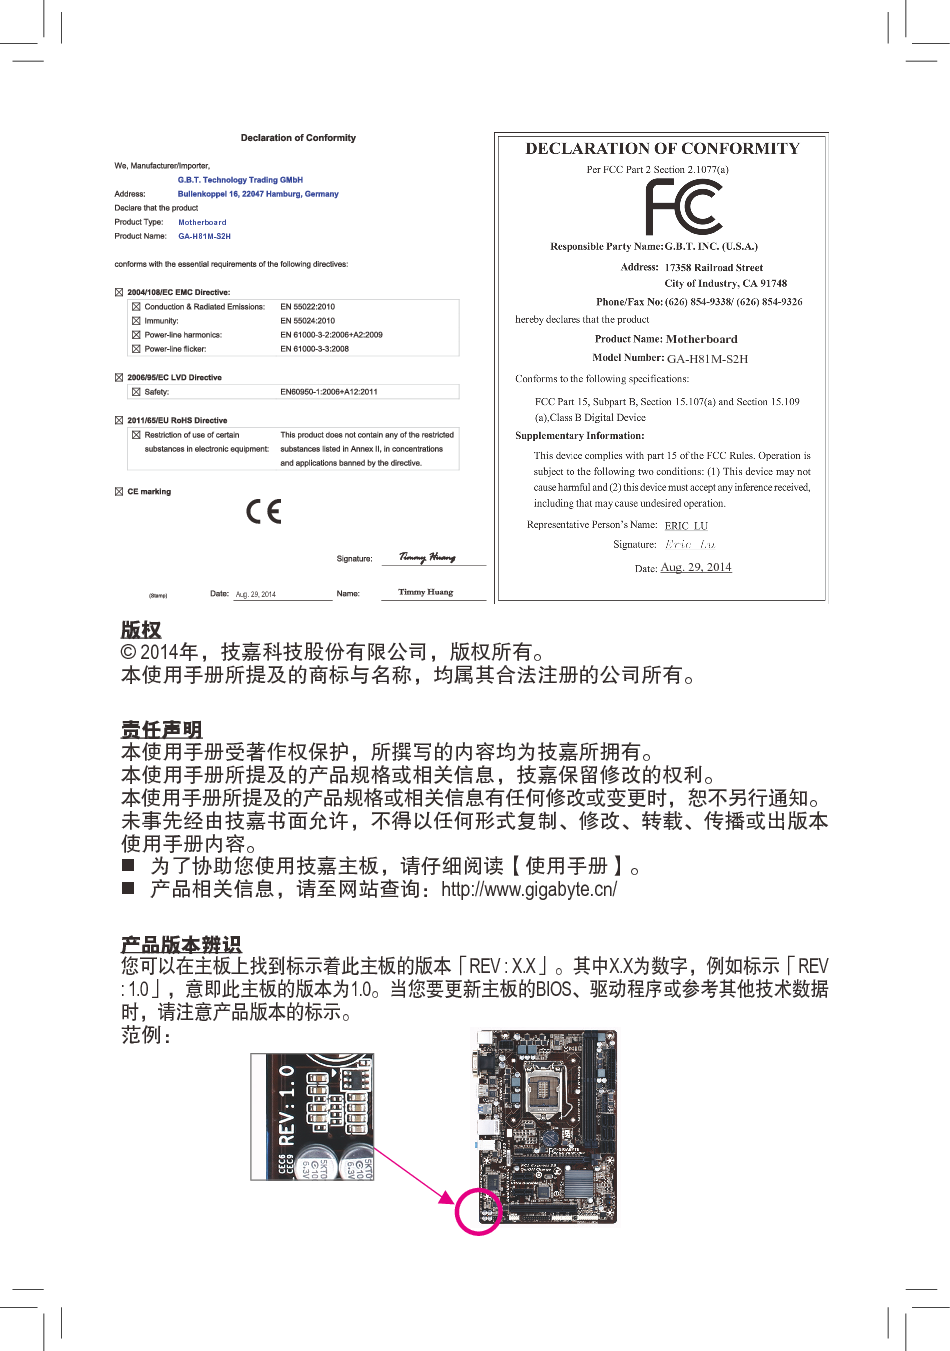 技嘉 Gigabyte GA-H81M-S2H 使用手册 第1页